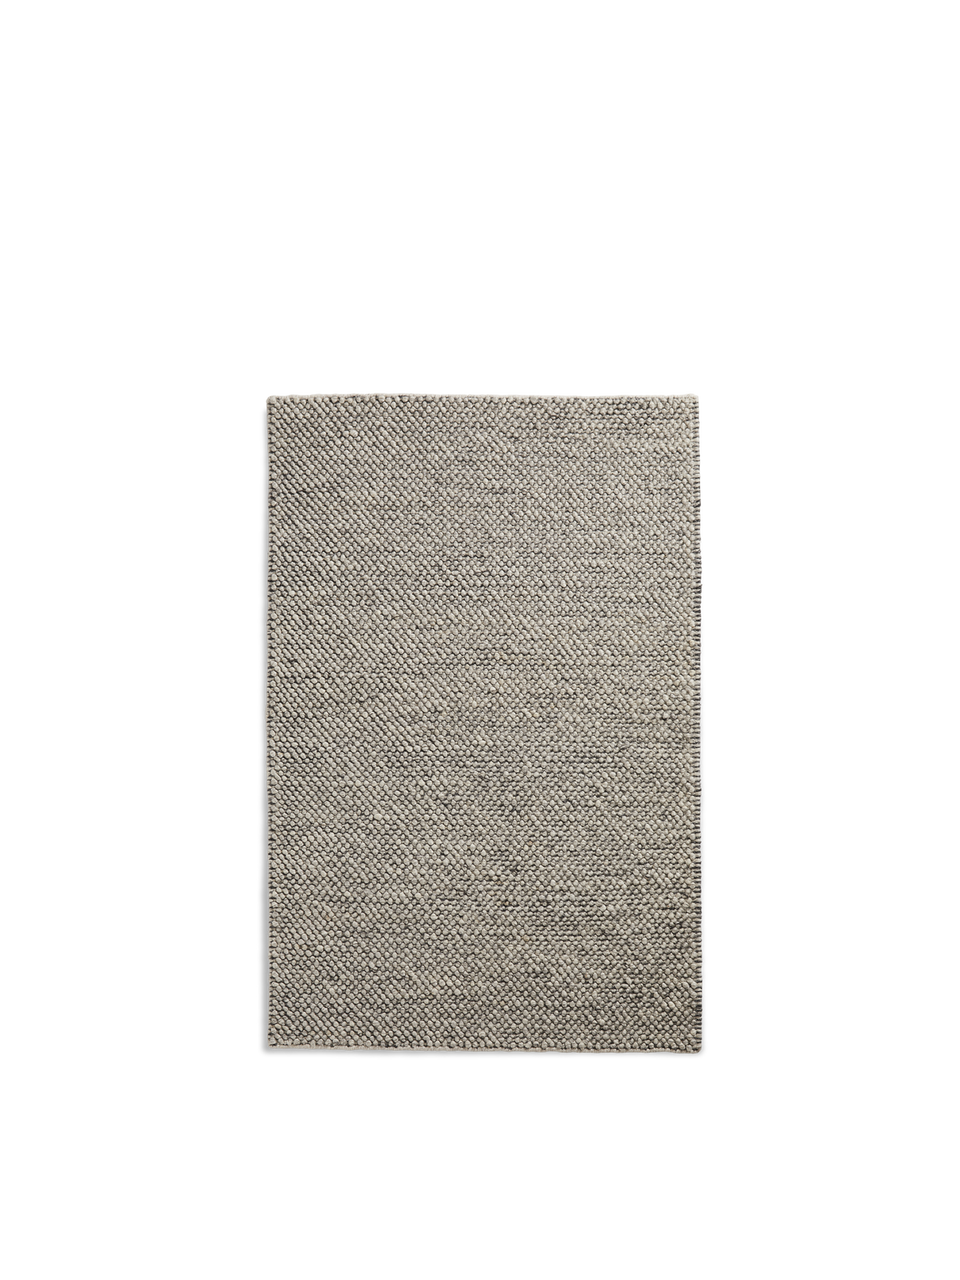 tact rug 2.9’ x 4.6’ dark grey